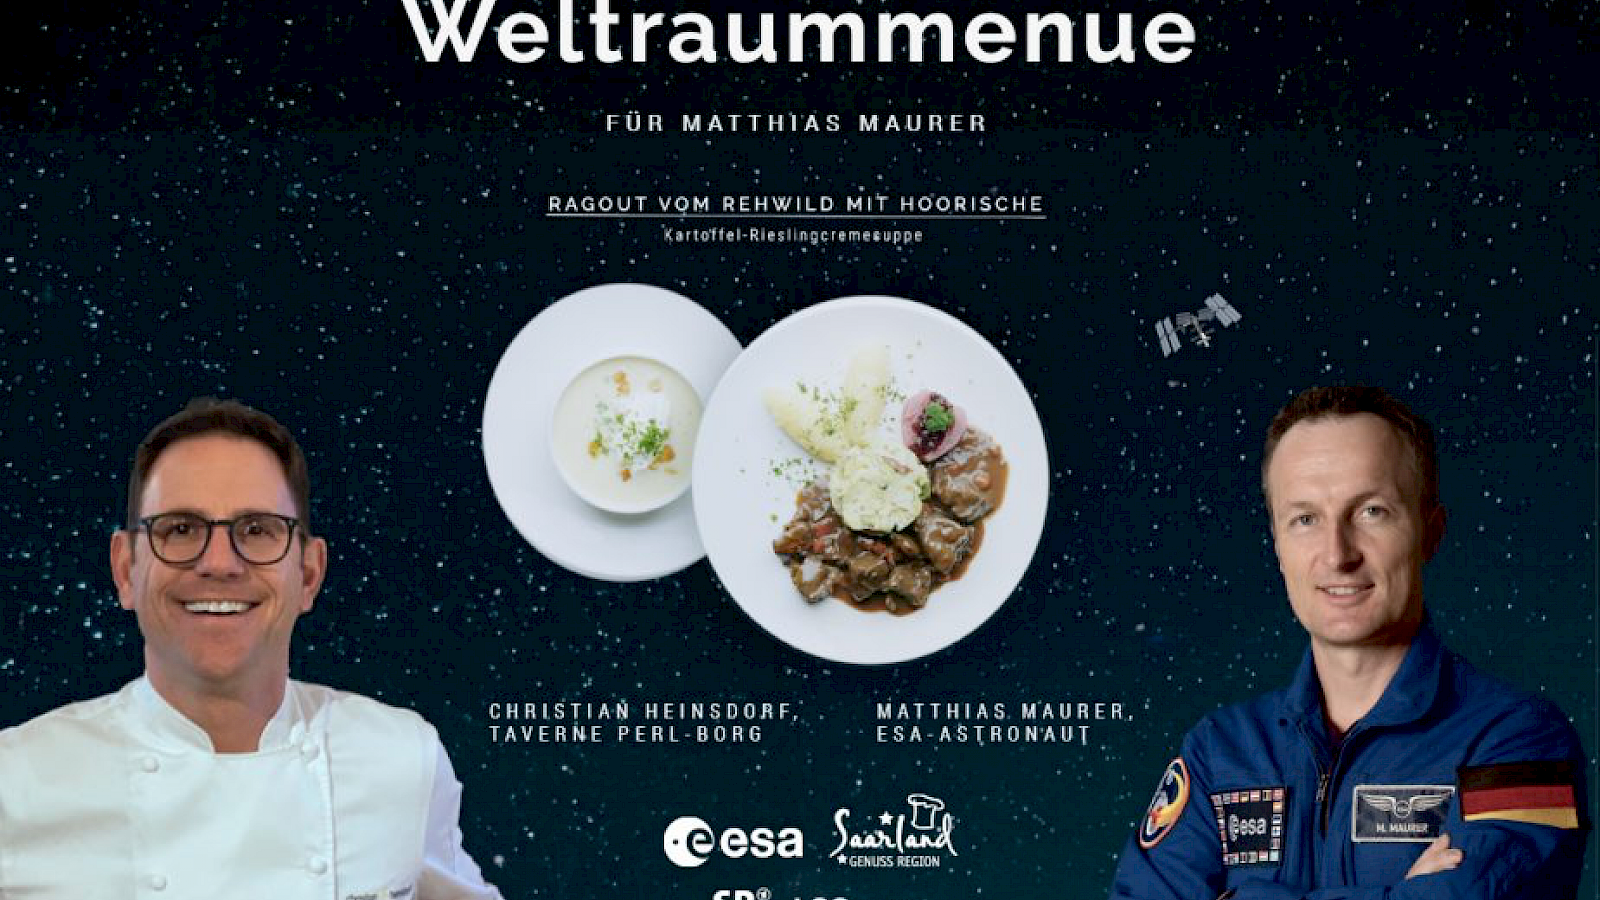 Zu sehen sind Astronaut Matthias Maurer, Christian Heinsdorf und sein Weltraummenue. Visual: zeit:raum / TZS